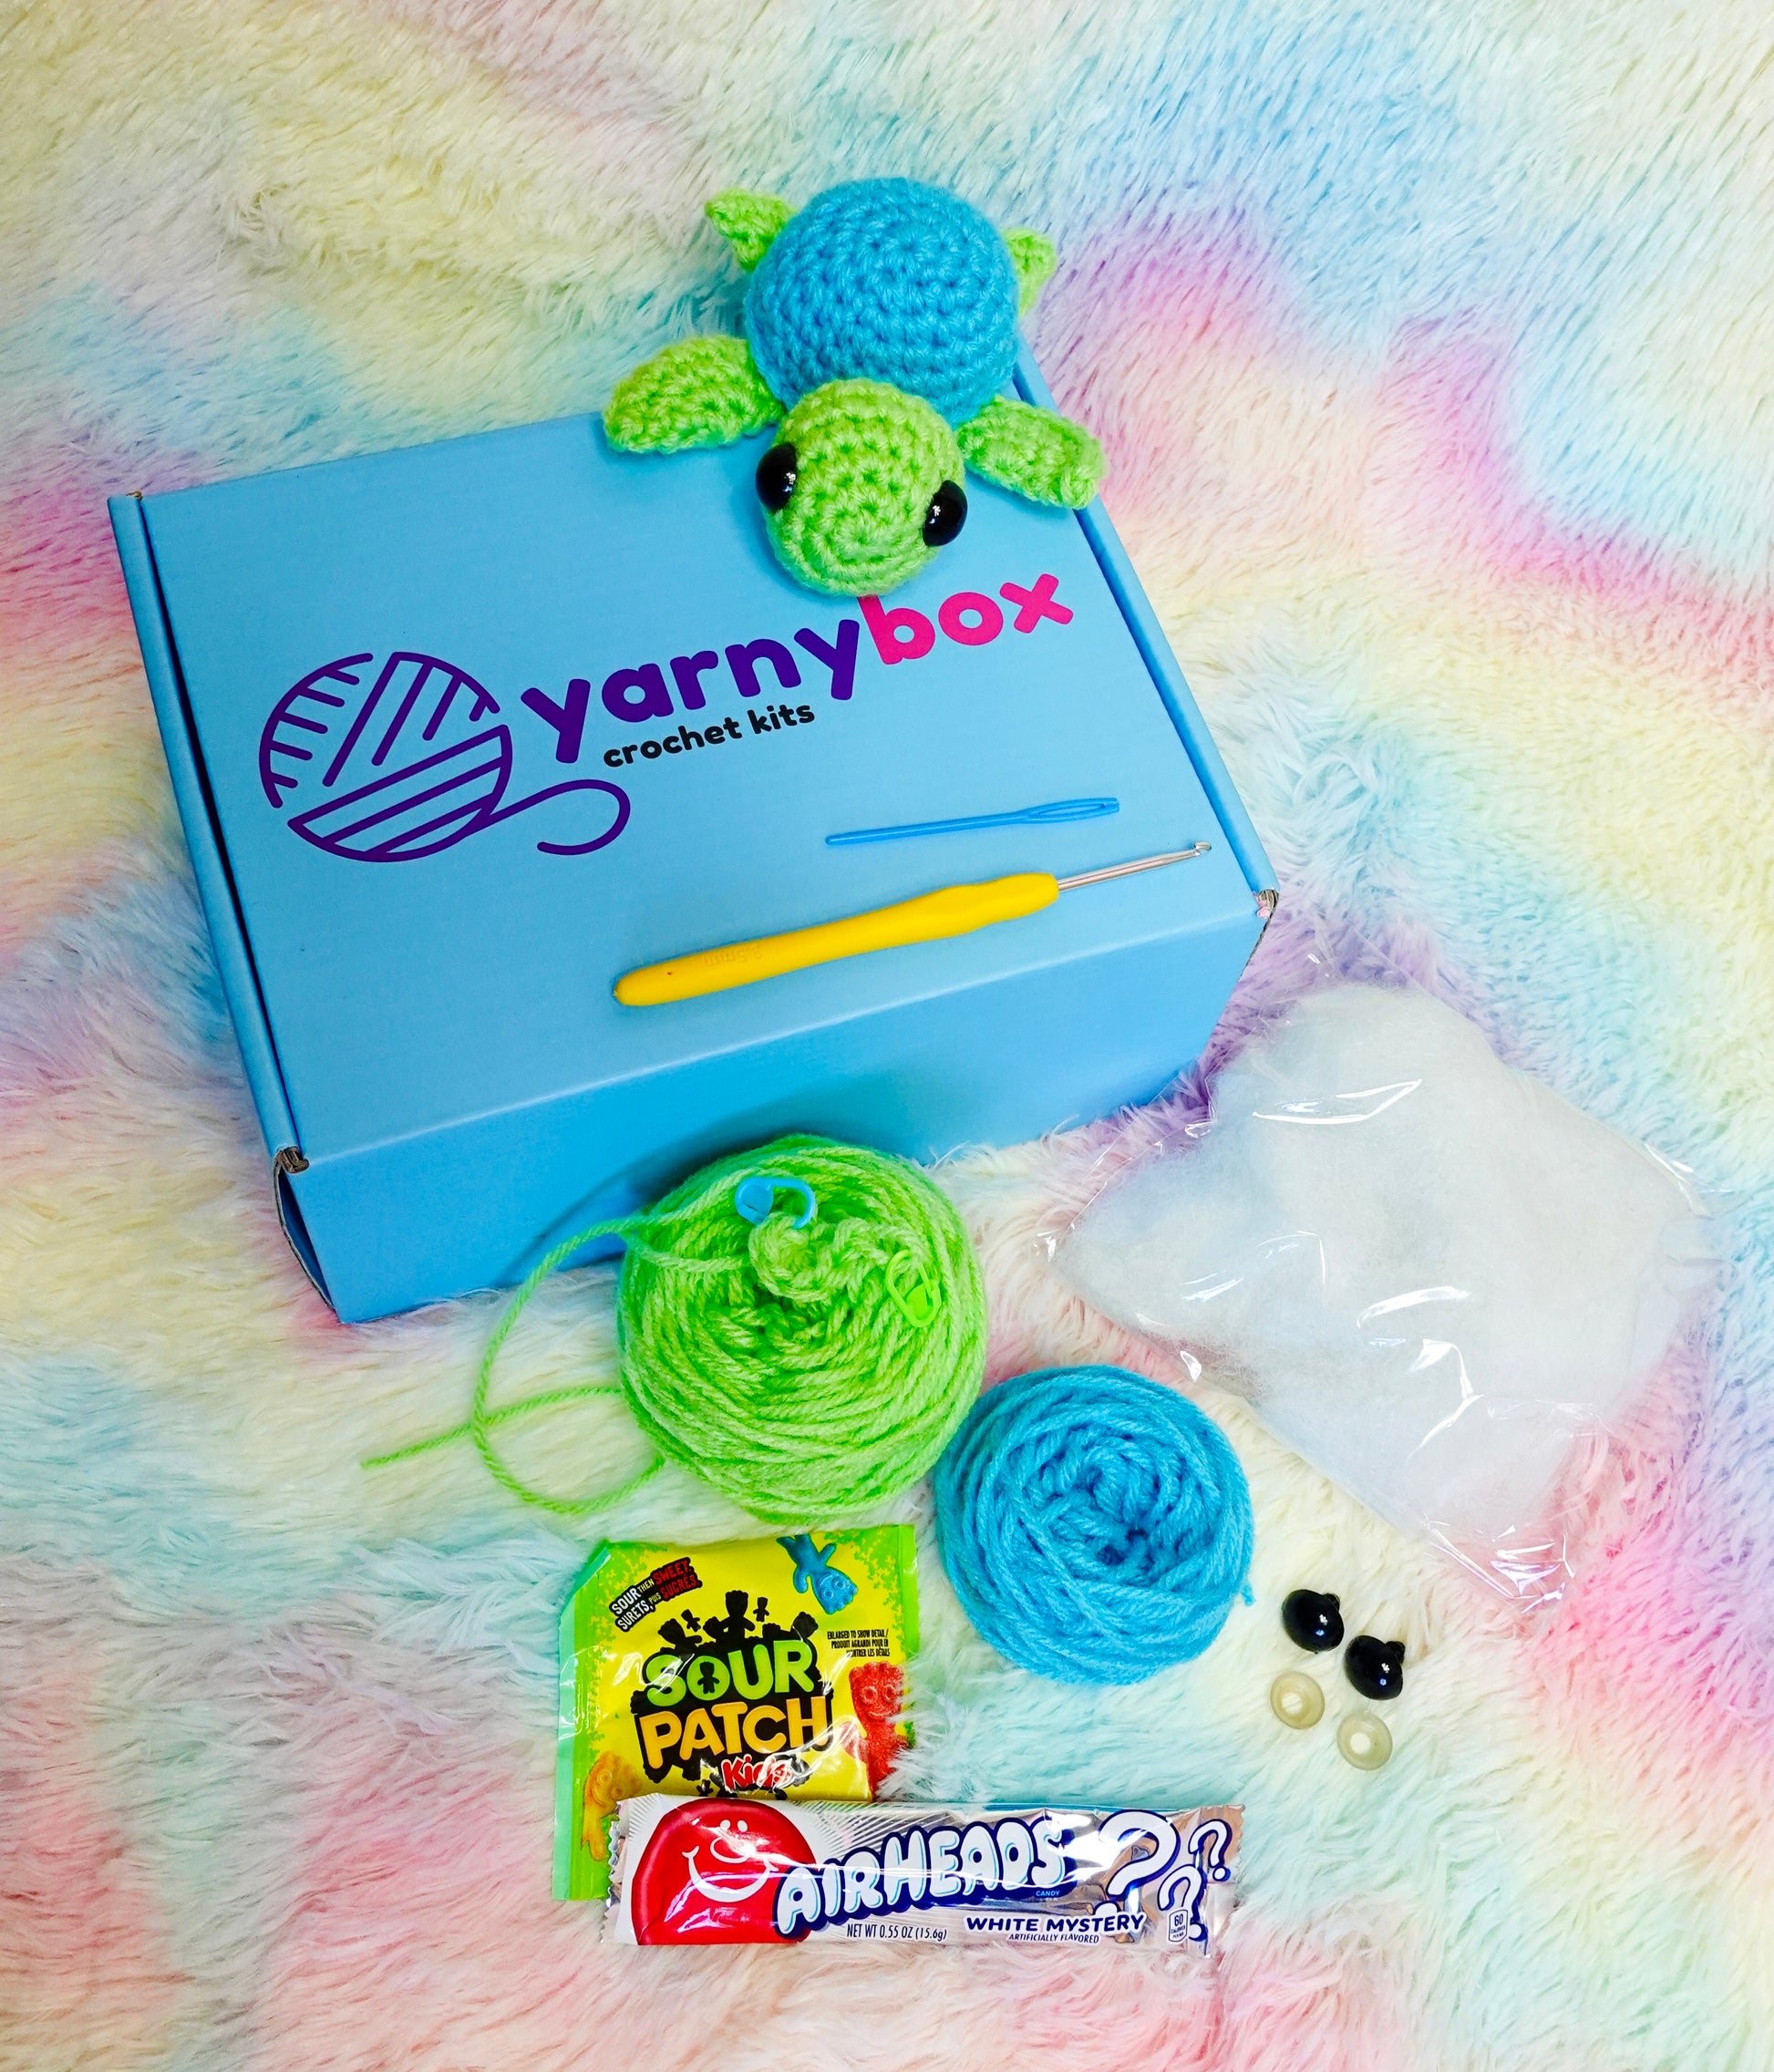 Monthly Amigurumi Crochet Kit Subscription